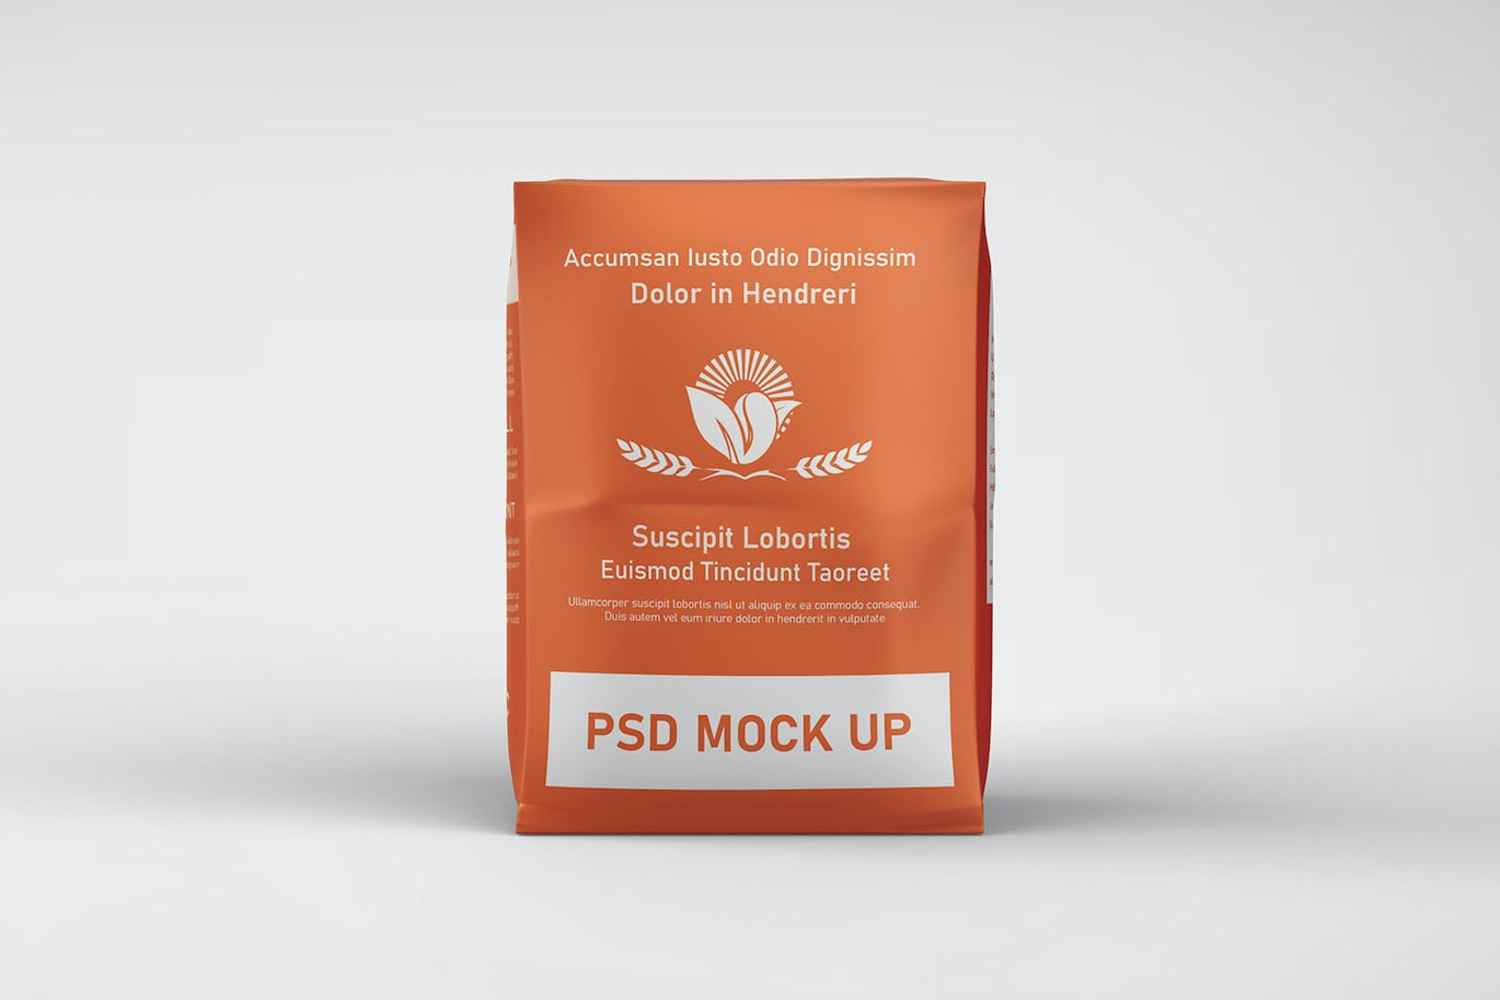 6275 创意设计面粉袋包装样机模型-Flour bag packaging mockup